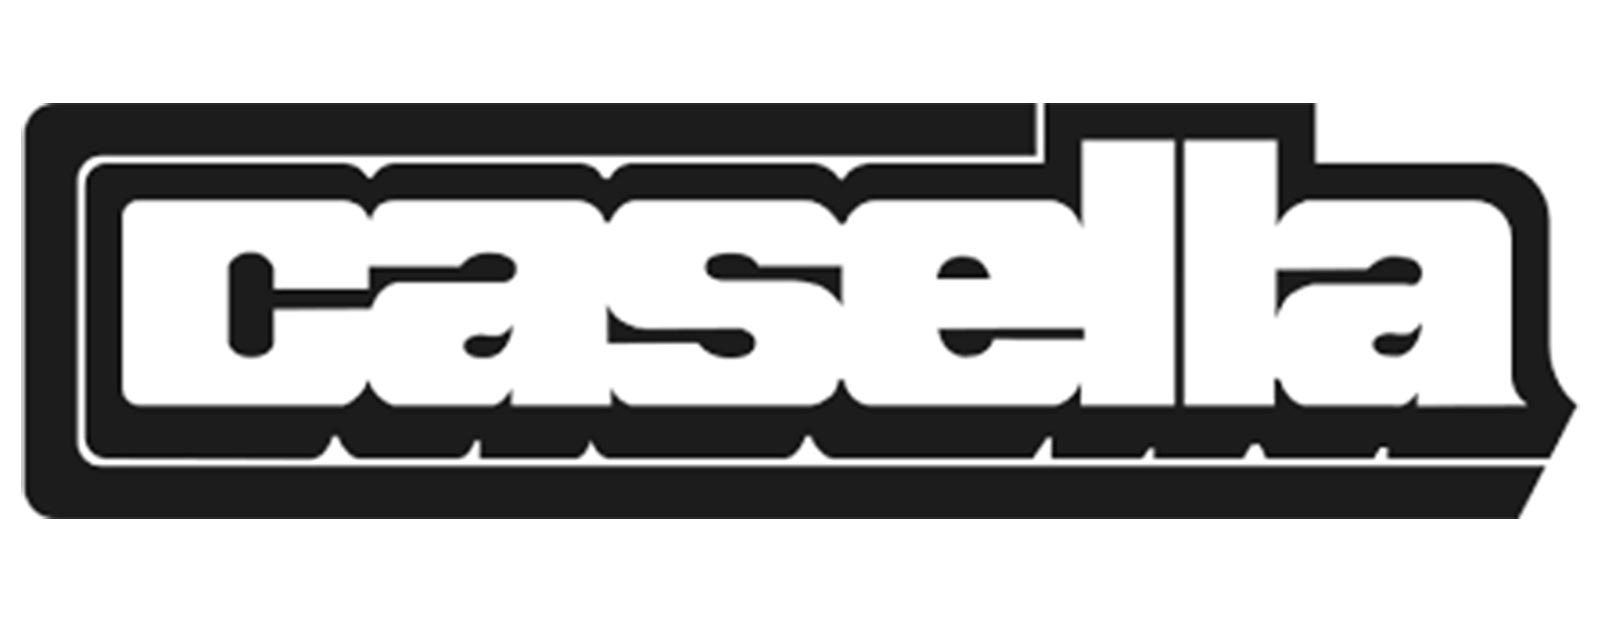 Casella Waste Systems, Inc. 徽标